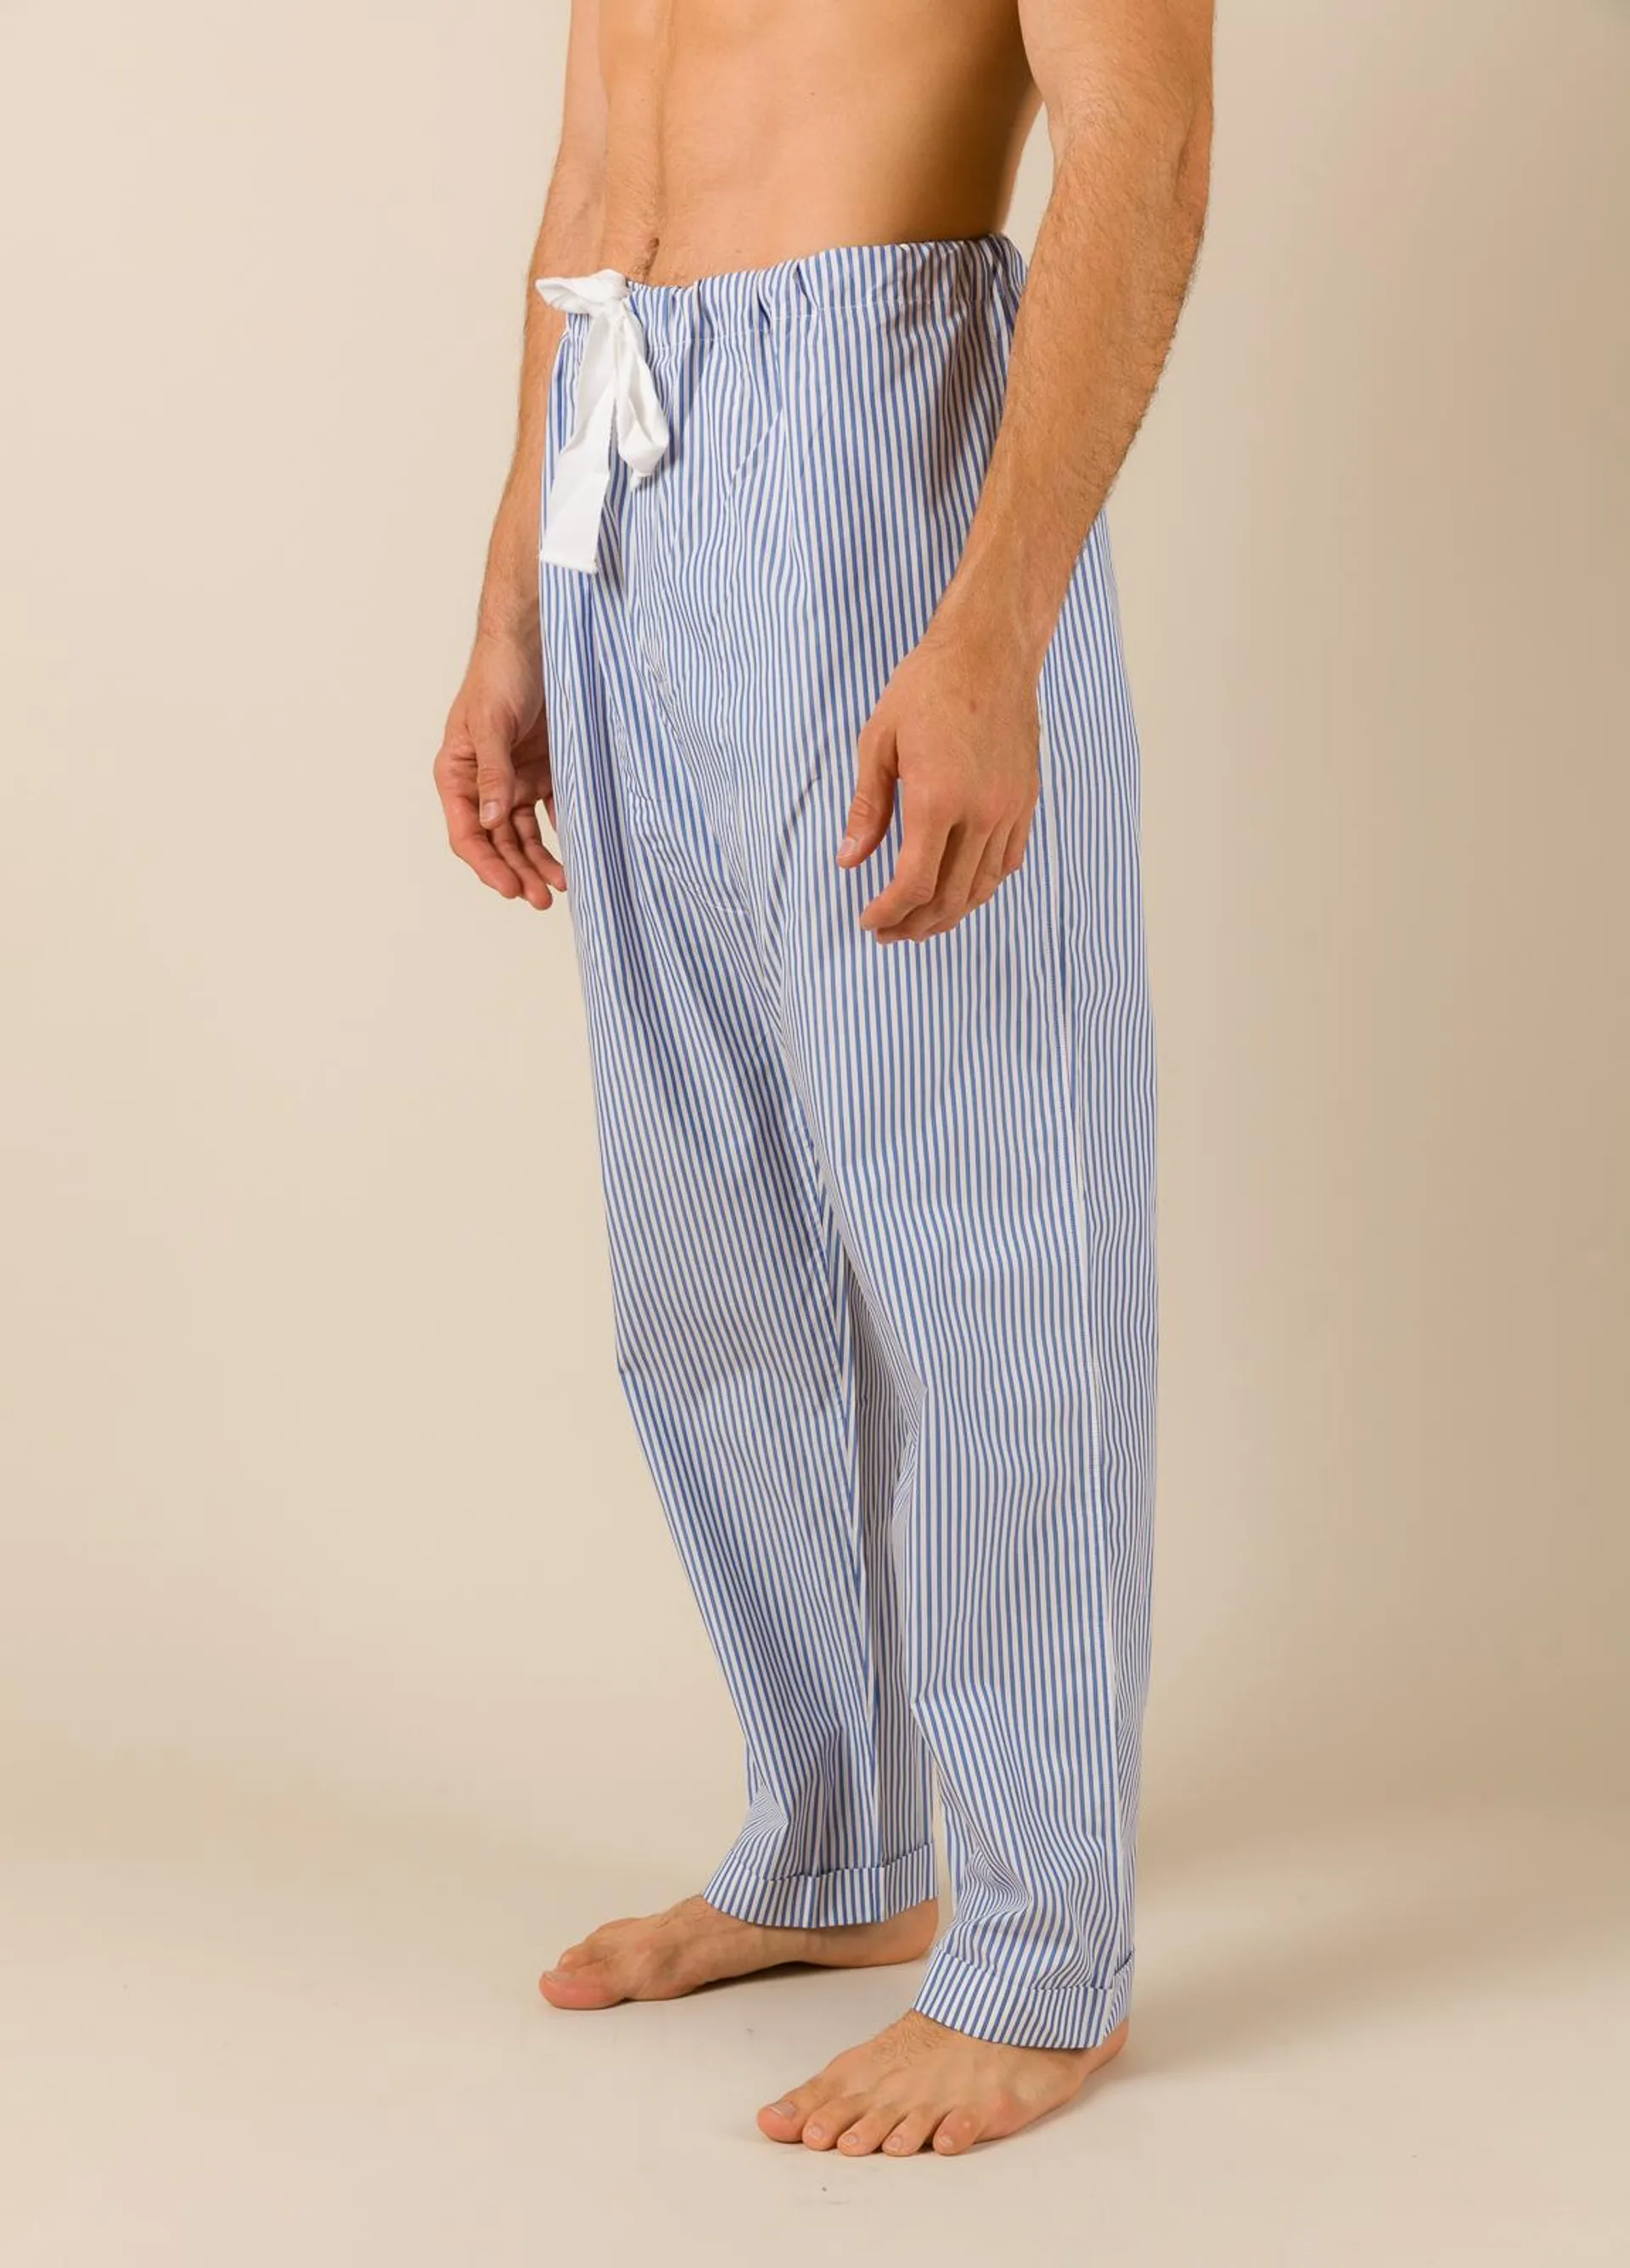 Pantalón largo de Pijama FUREST COLECCIÓN rayas azul con funda incluida